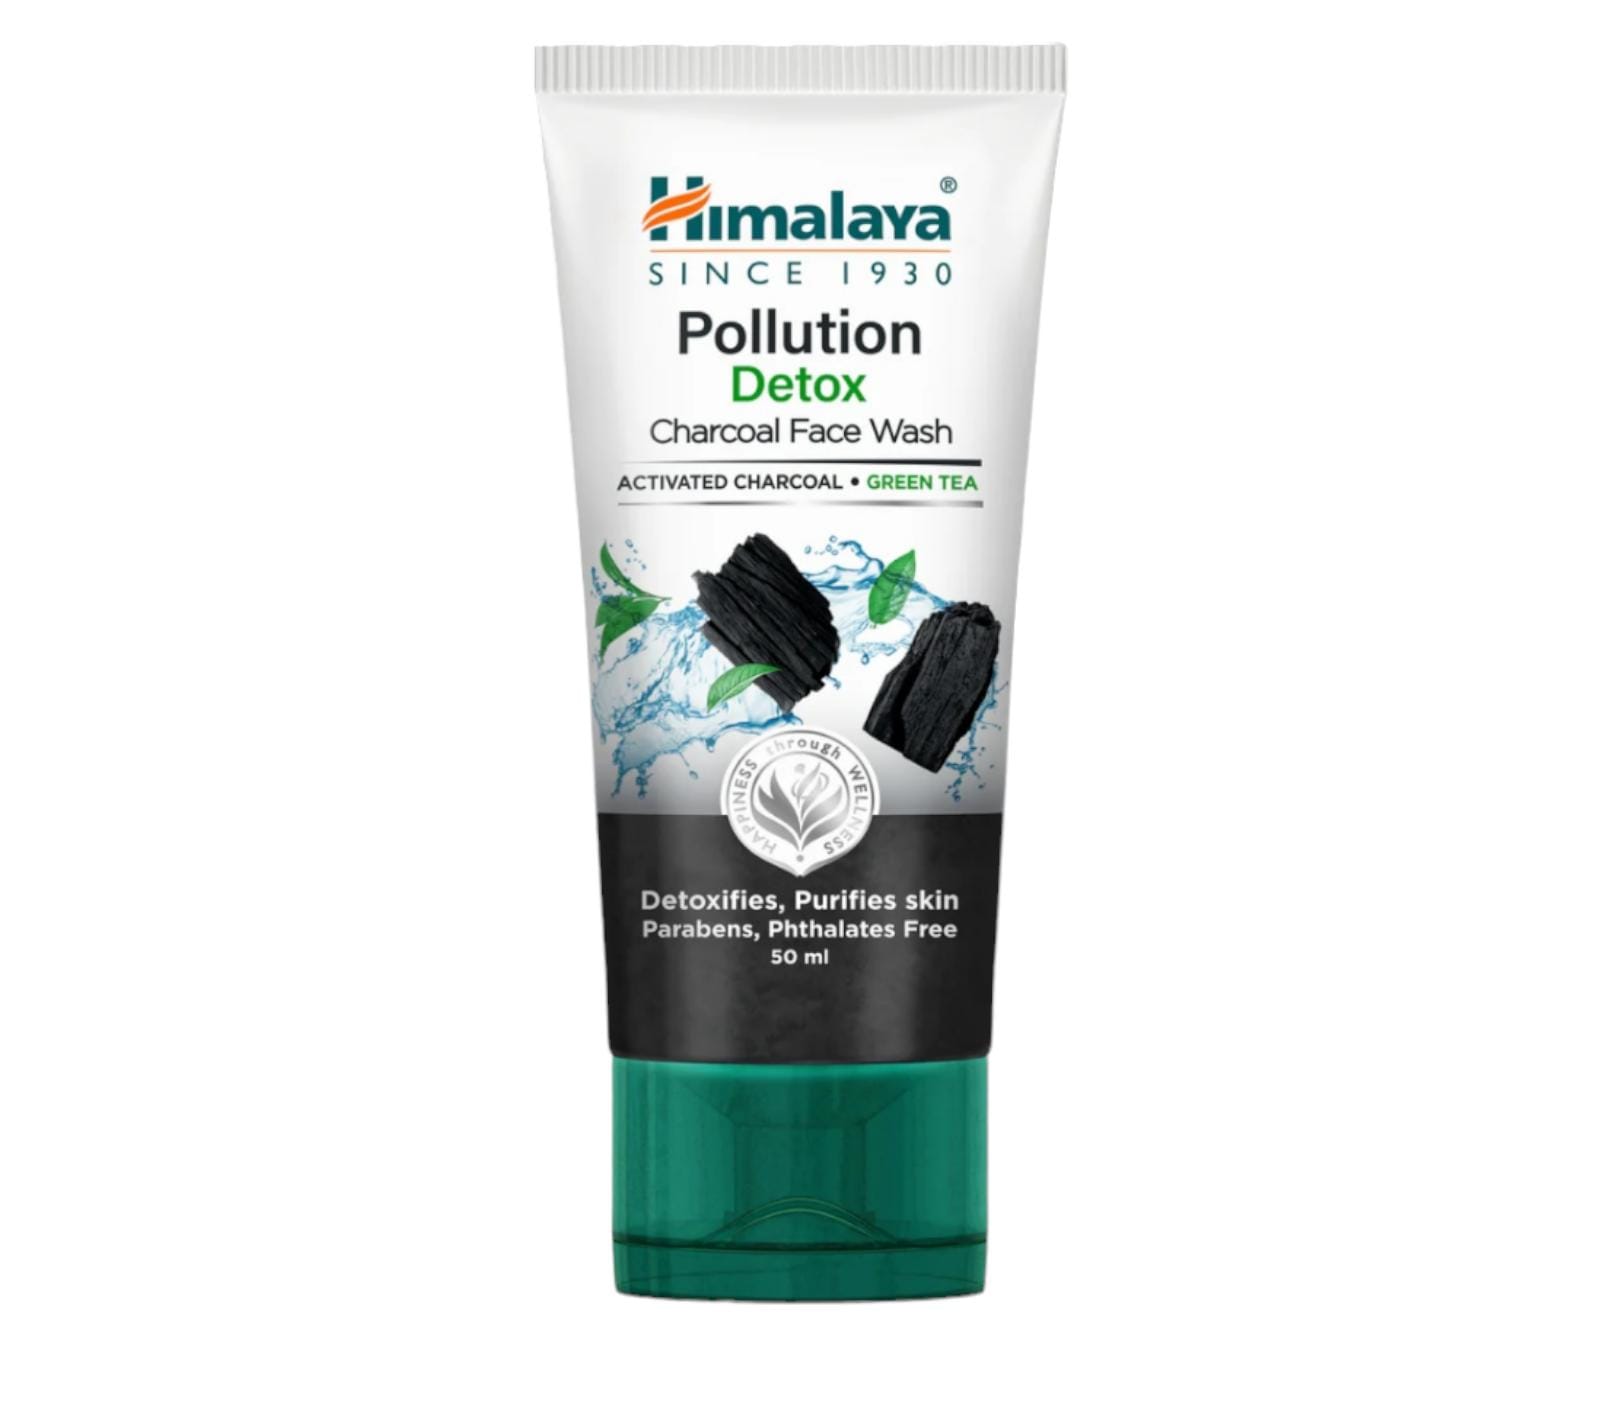 Himalaya Pollution Detox face wash